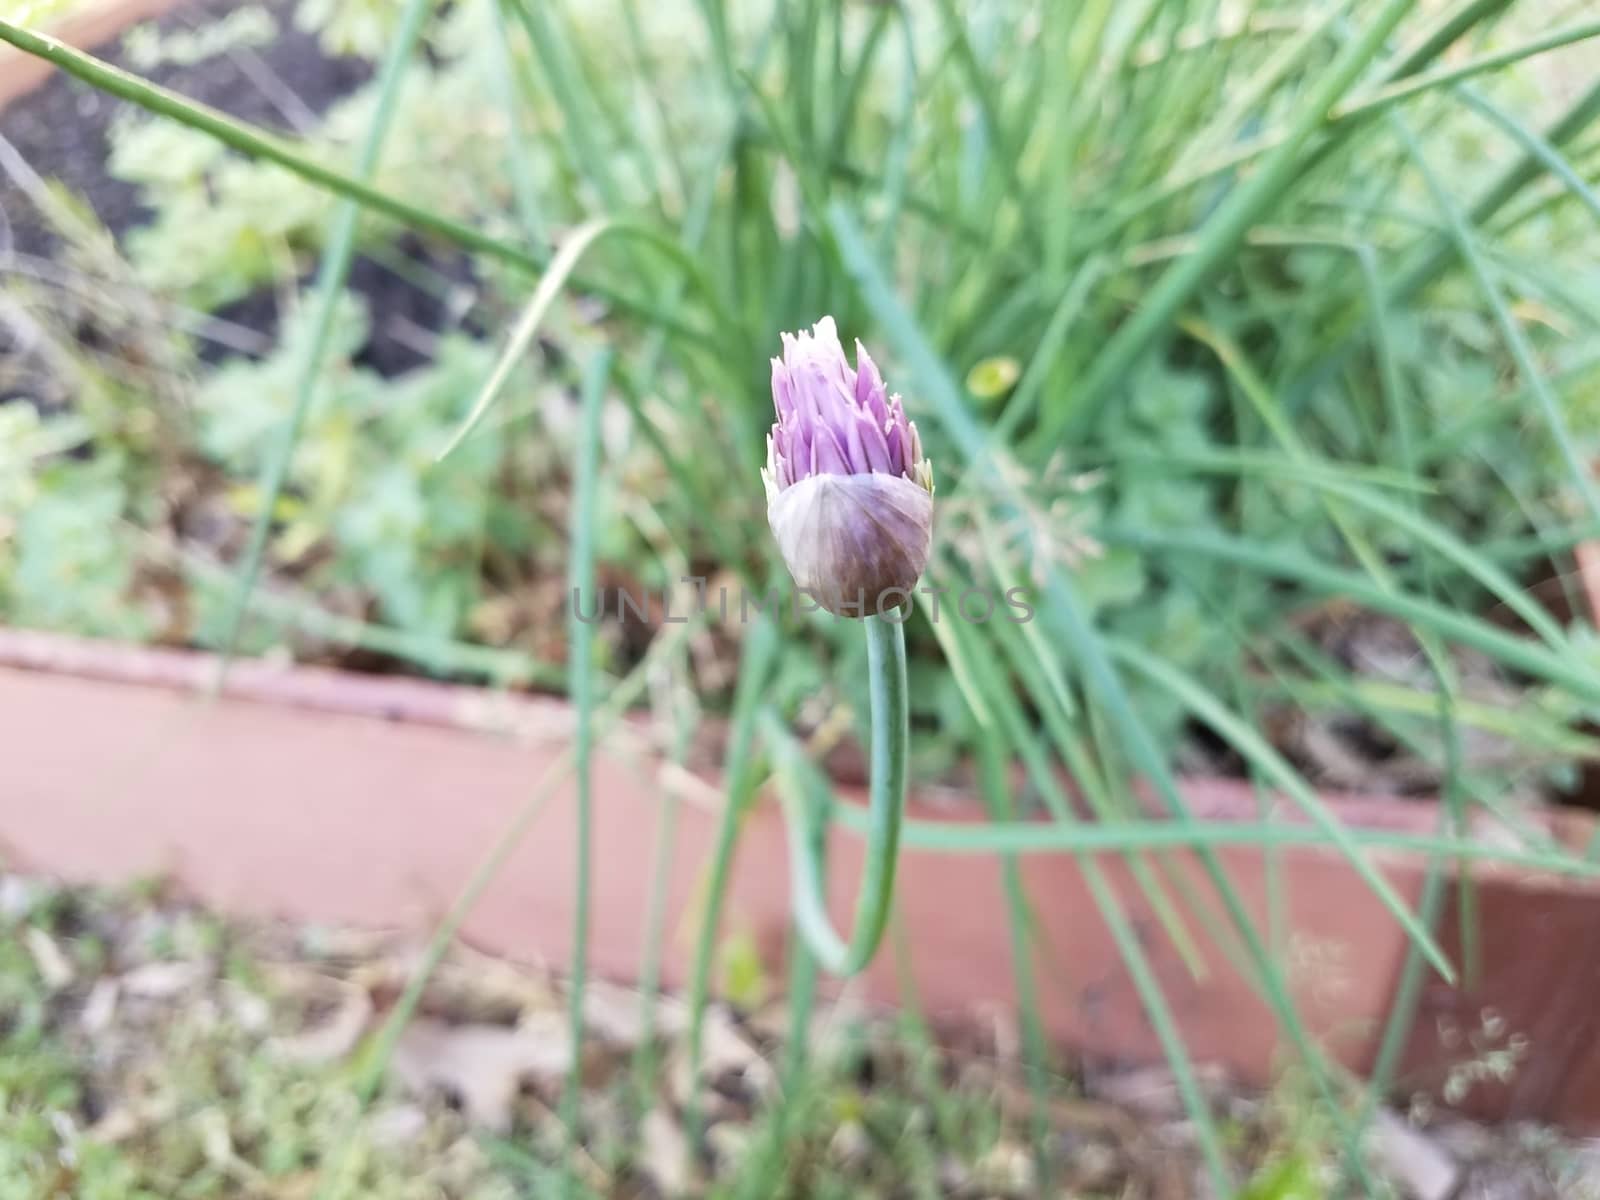 purple flower on green chive or onion plant in garden by stockphotofan1